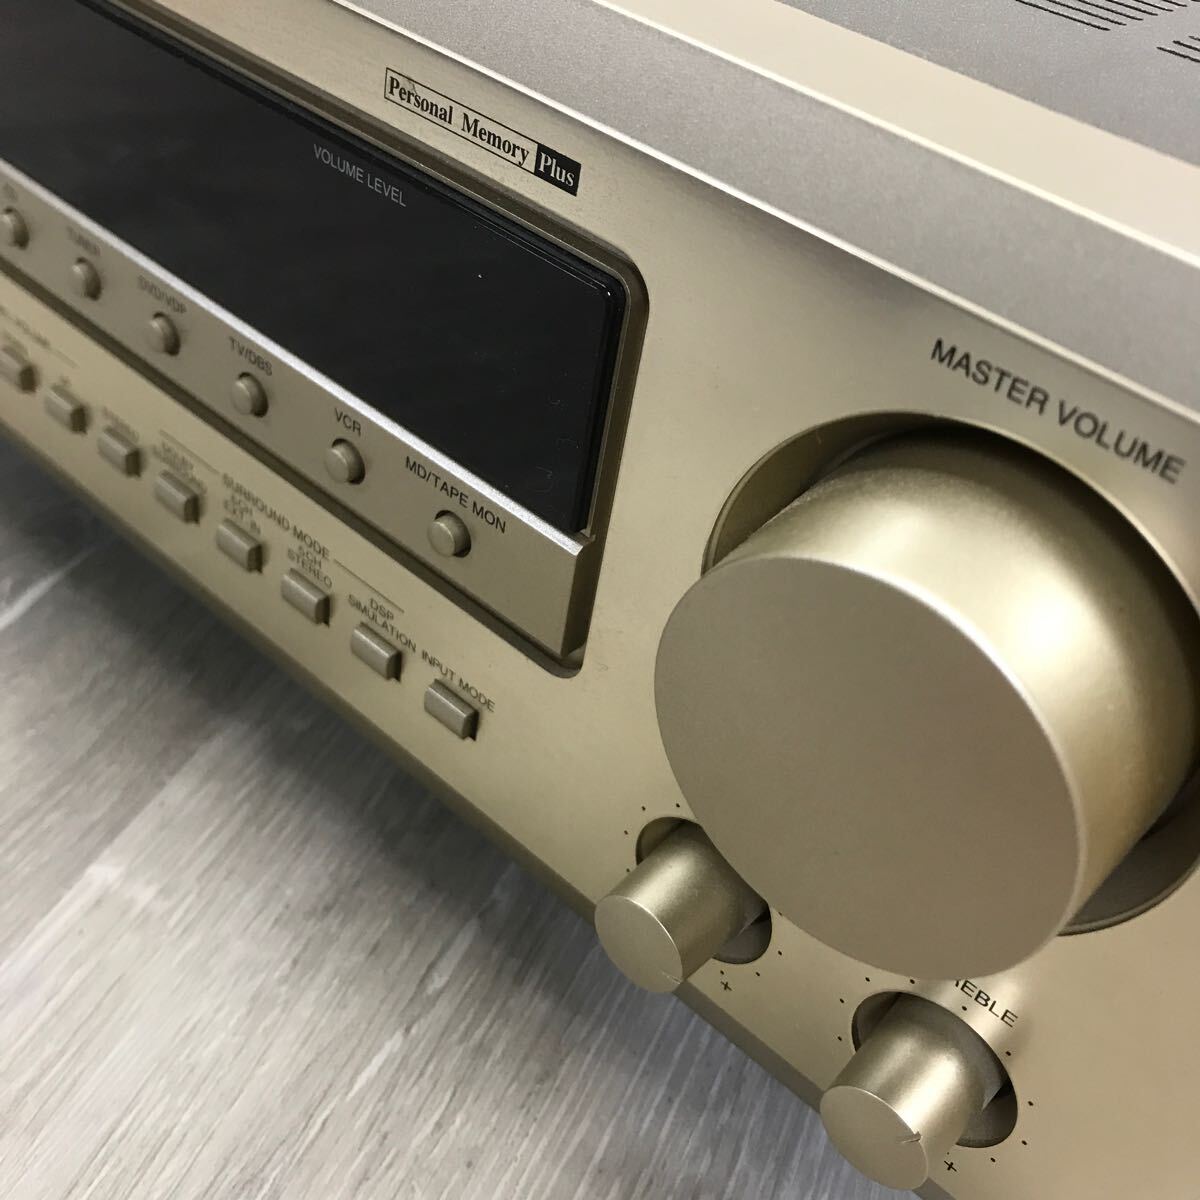 348 Japan ko rom Via DENON Denon AV Surround receiver AVR-1600 Gold AV amplifier amplifier 